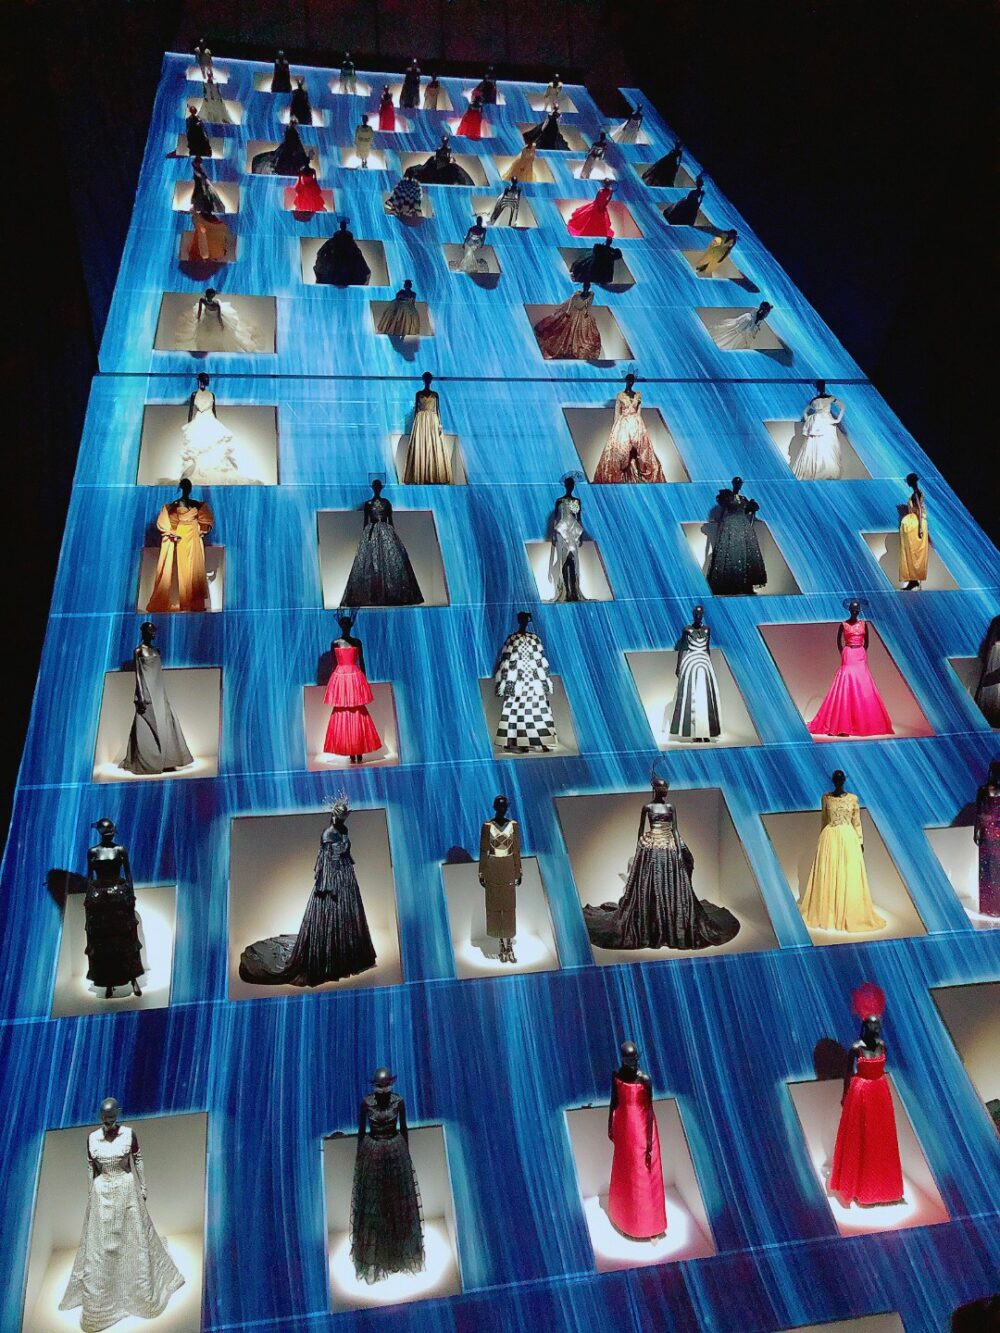 クリスチャン・ディオール展。吹き抜けの大空間に歴代のオートクチュールのドレスが並ぶ様（さま）は圧巻！